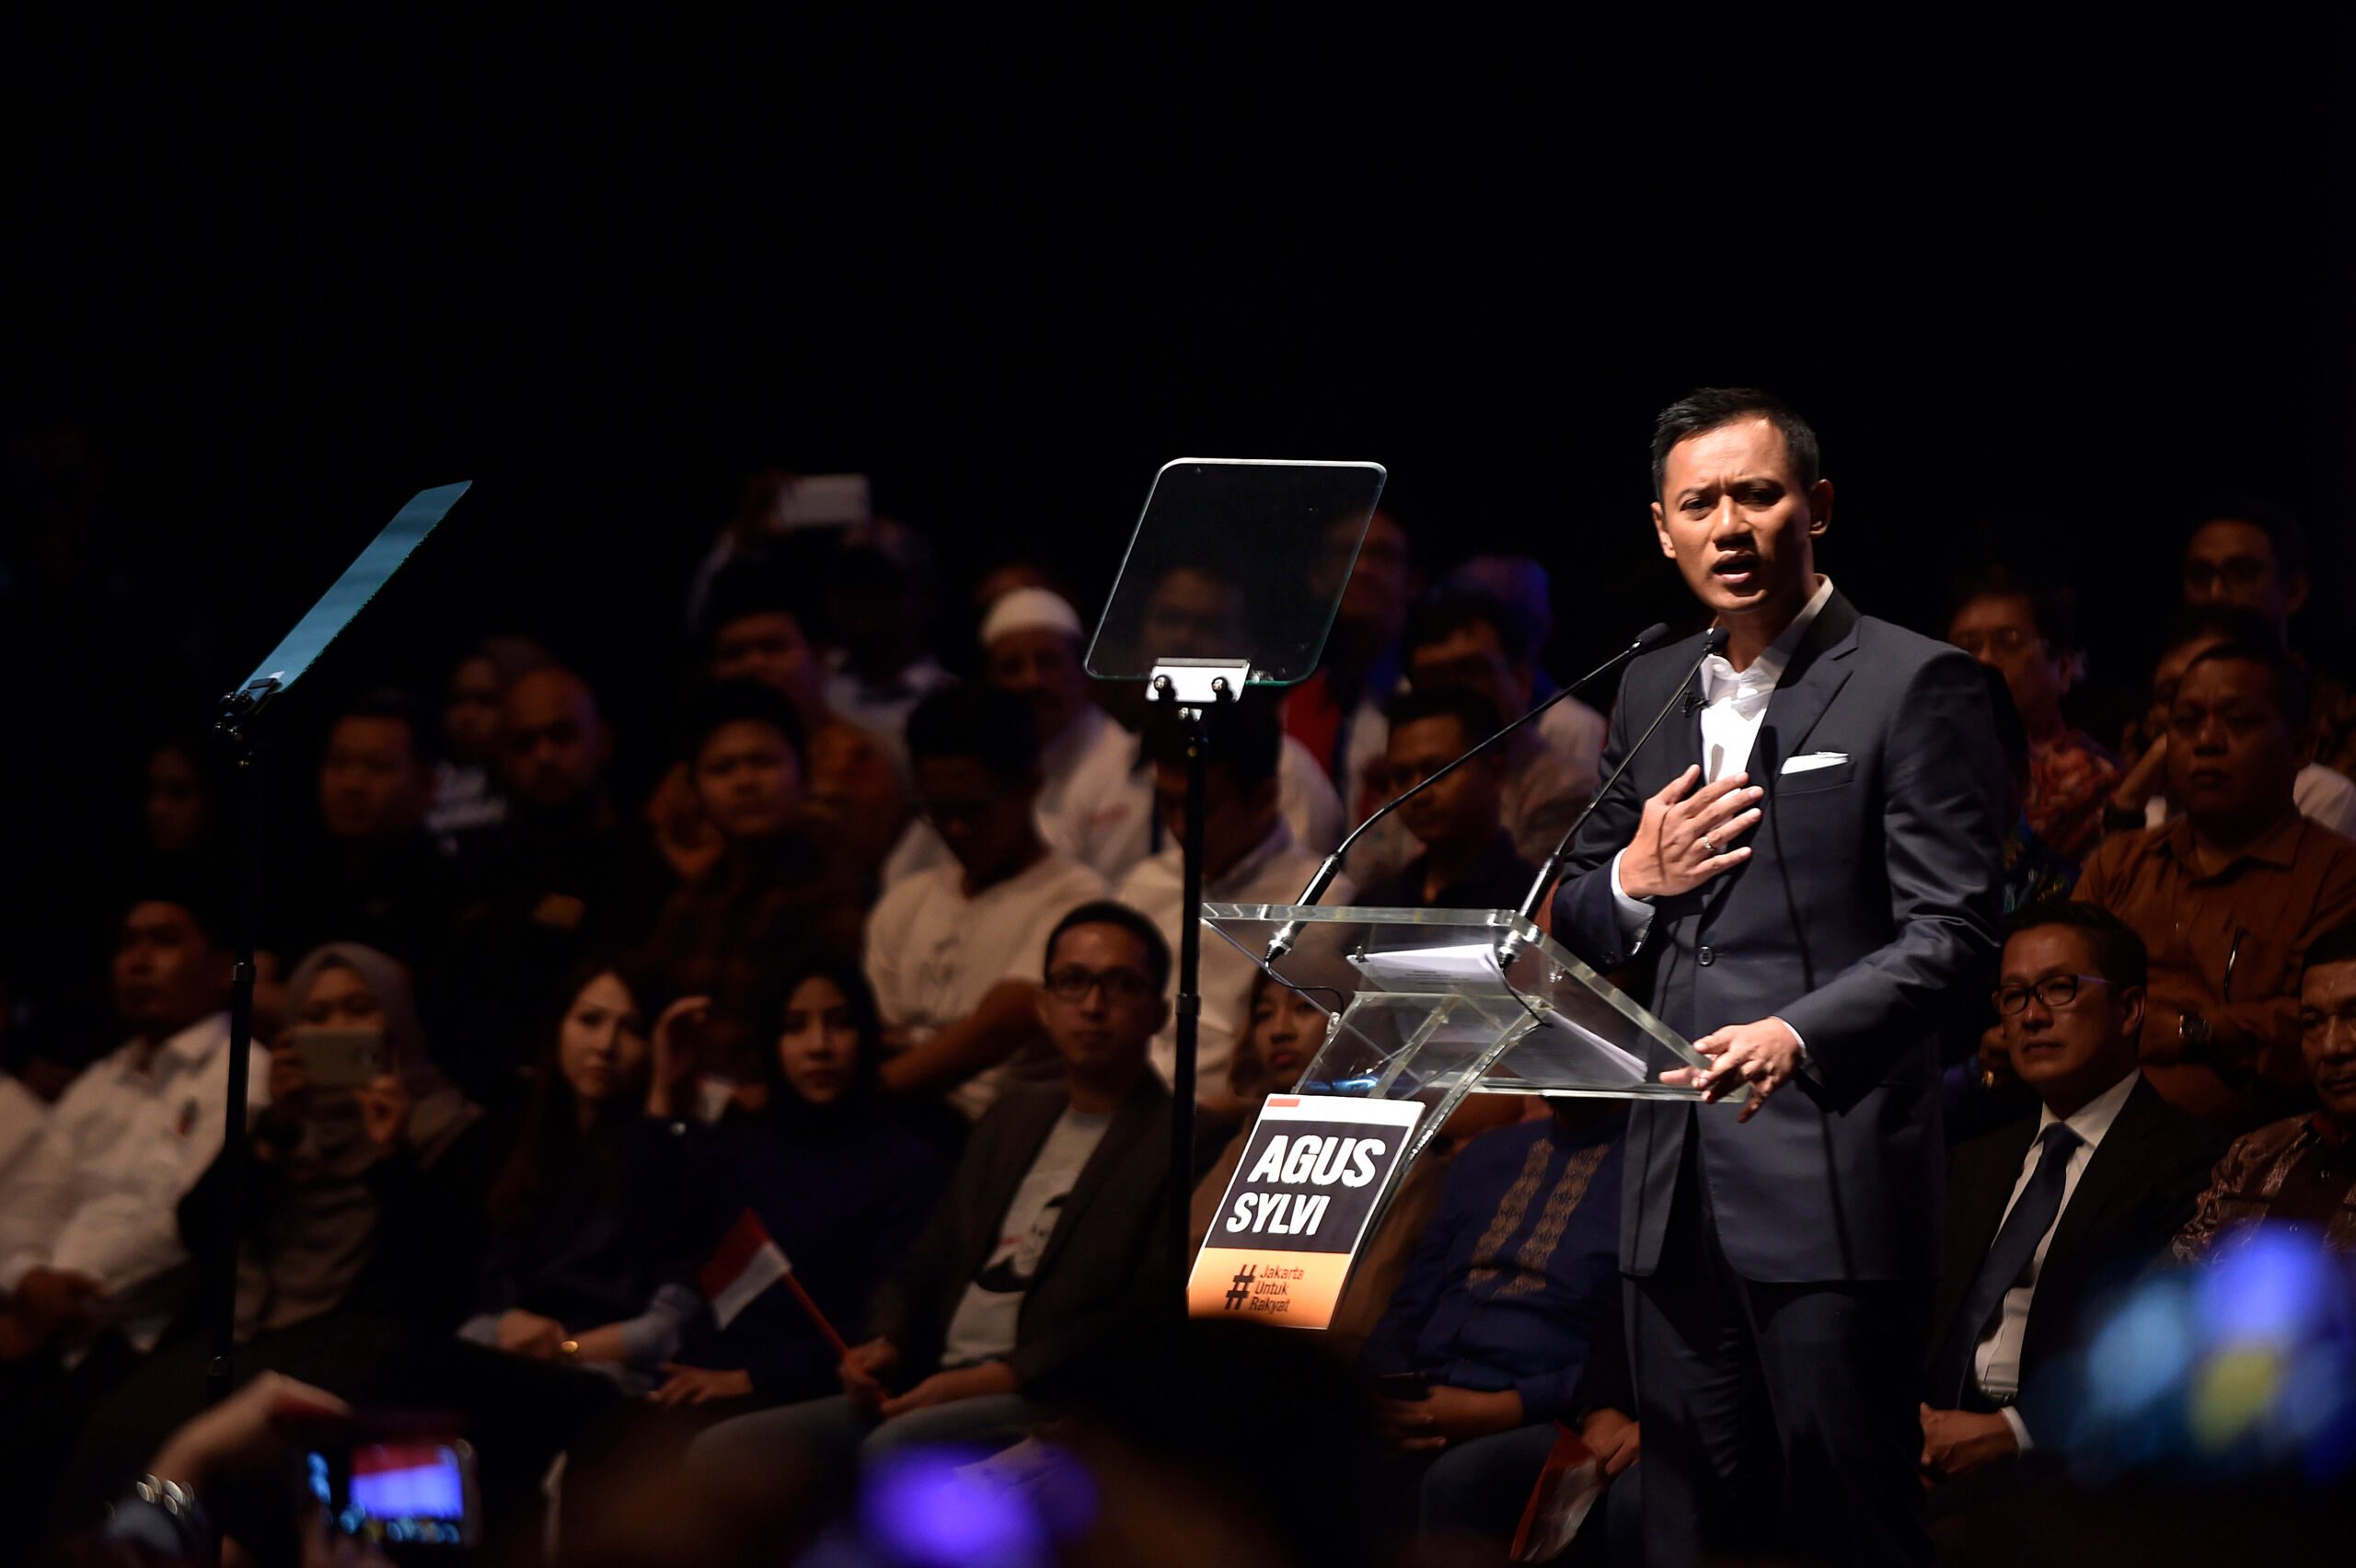 Pidato politik, Agus Yudhoyono sebut Jakarta banyak ketimpangan